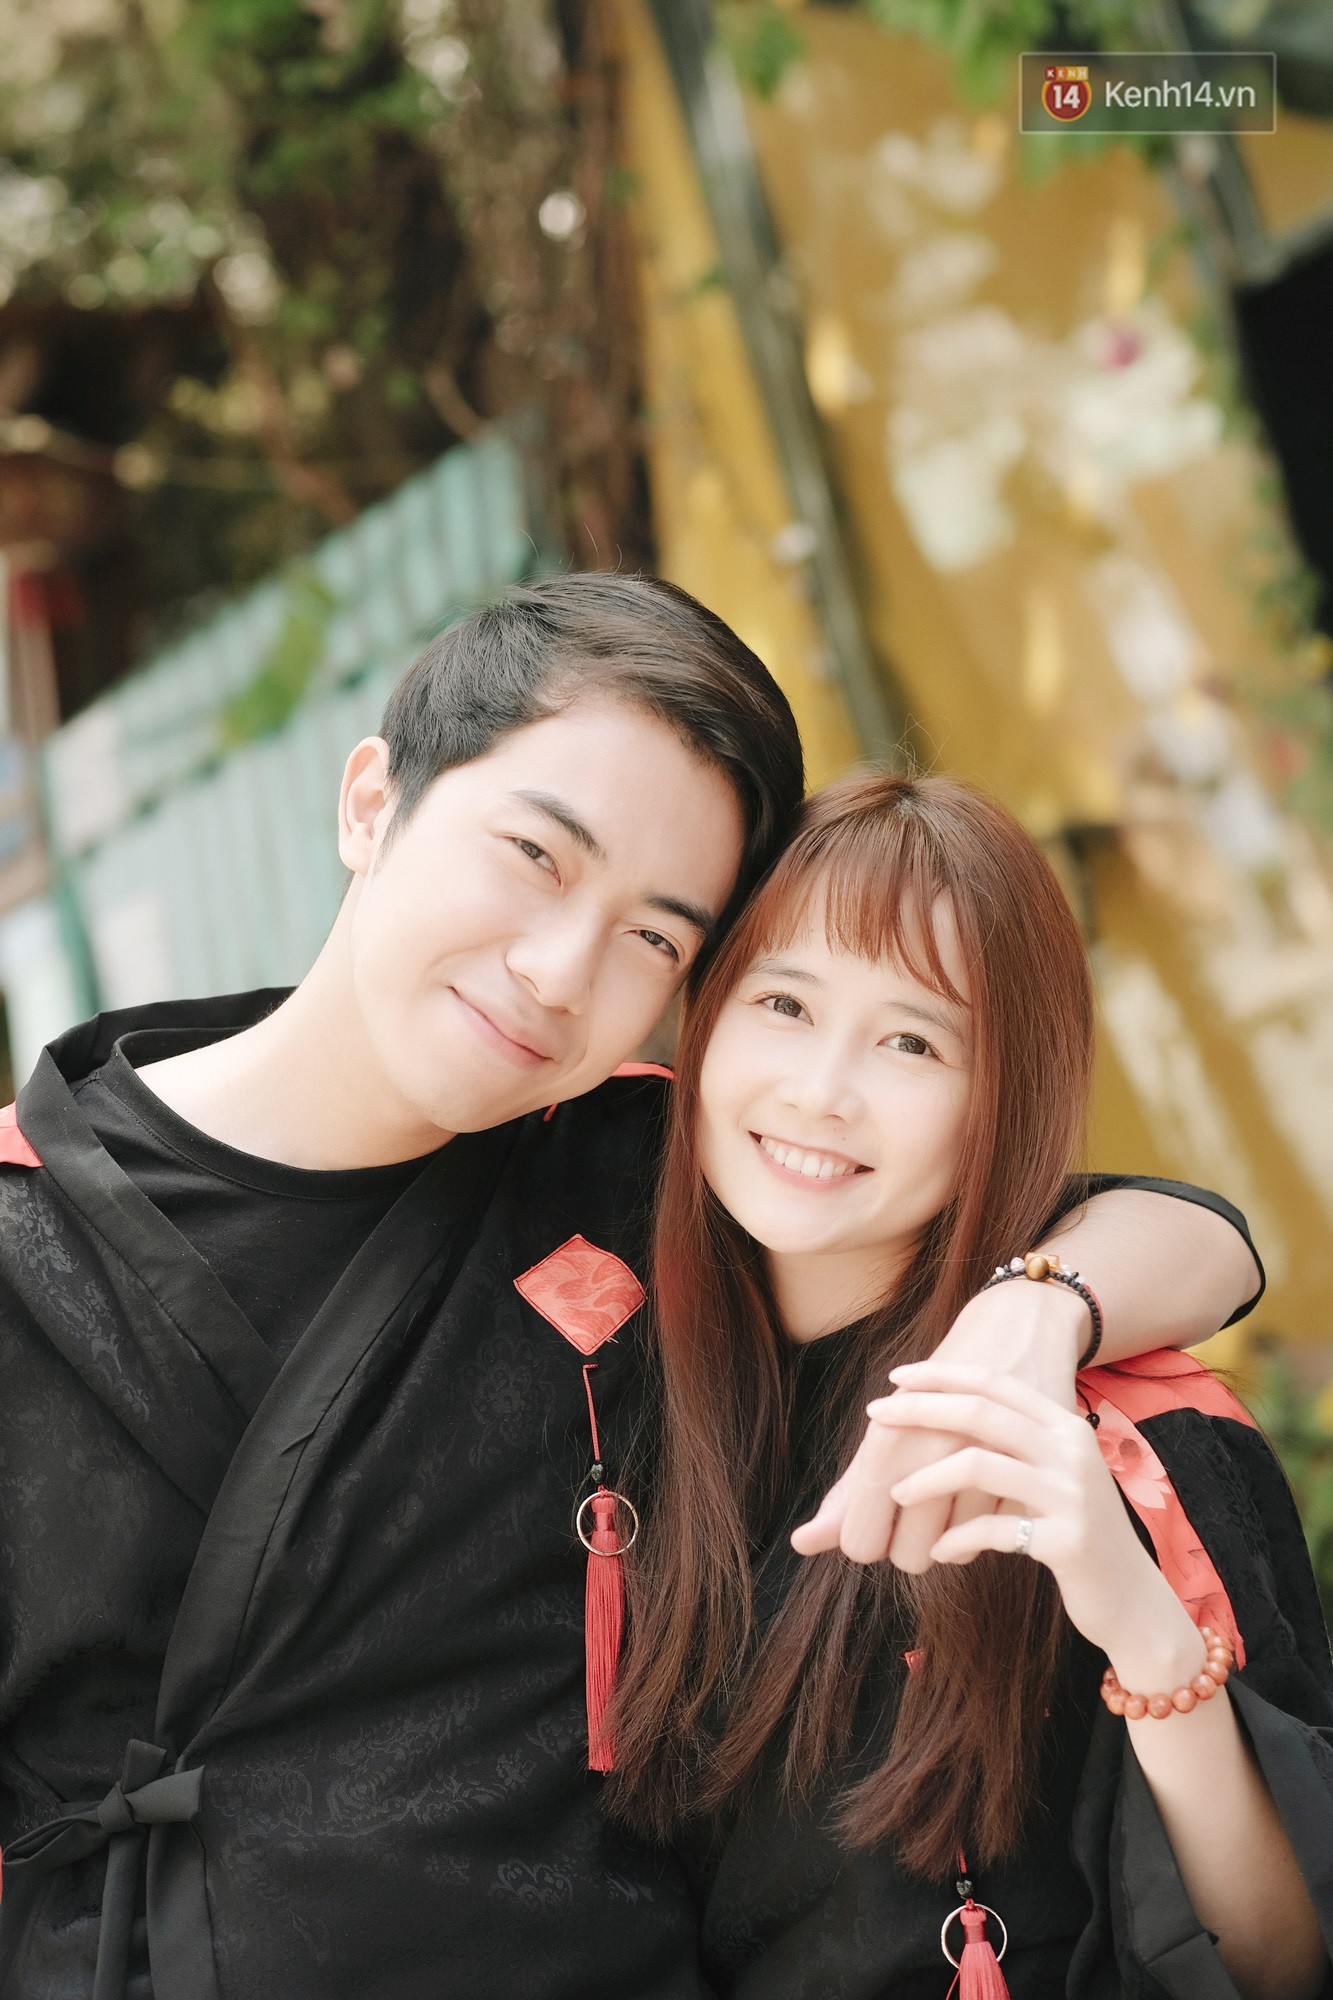 Cris Phan và hot girl FAPtv Mai Quỳnh Anh: Chuyện tình của chàng phi công nhút nhát và nàng không ngại cọc đi tìm trâu - Ảnh 1.